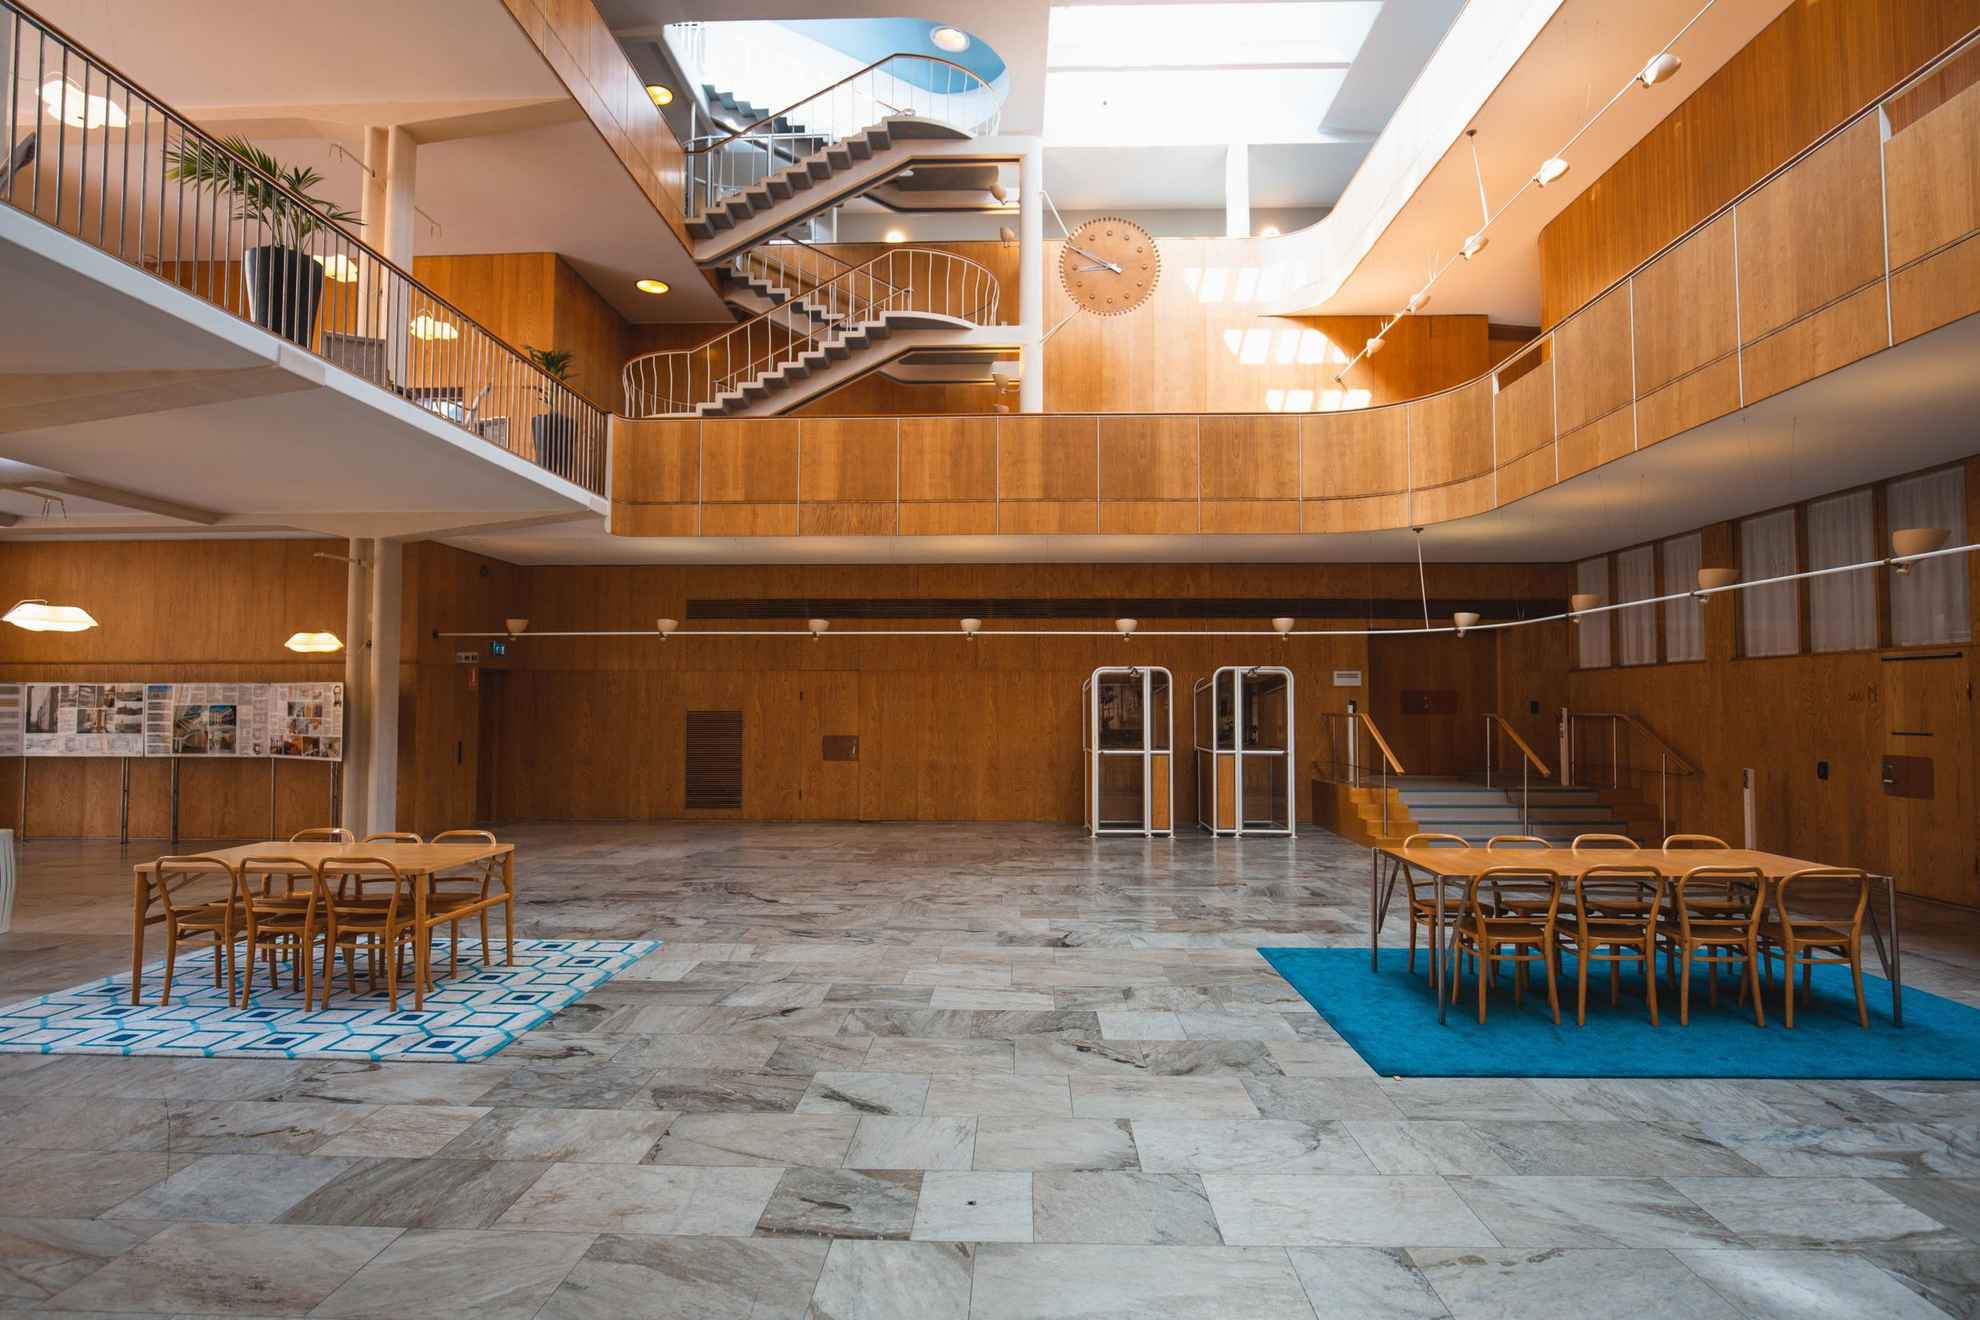 A l'intérieur de l'hôtel de ville on voit une salle avec des murs en bois et un sol en pierres. Deux ensembles de tables et chaises en bois sont situés à gauche et à droite et se trouvent sur un tapis bleu et un tapis à motifs. Au niveau des étages supérieurs, on aperçoit des balcons et des escaliers.